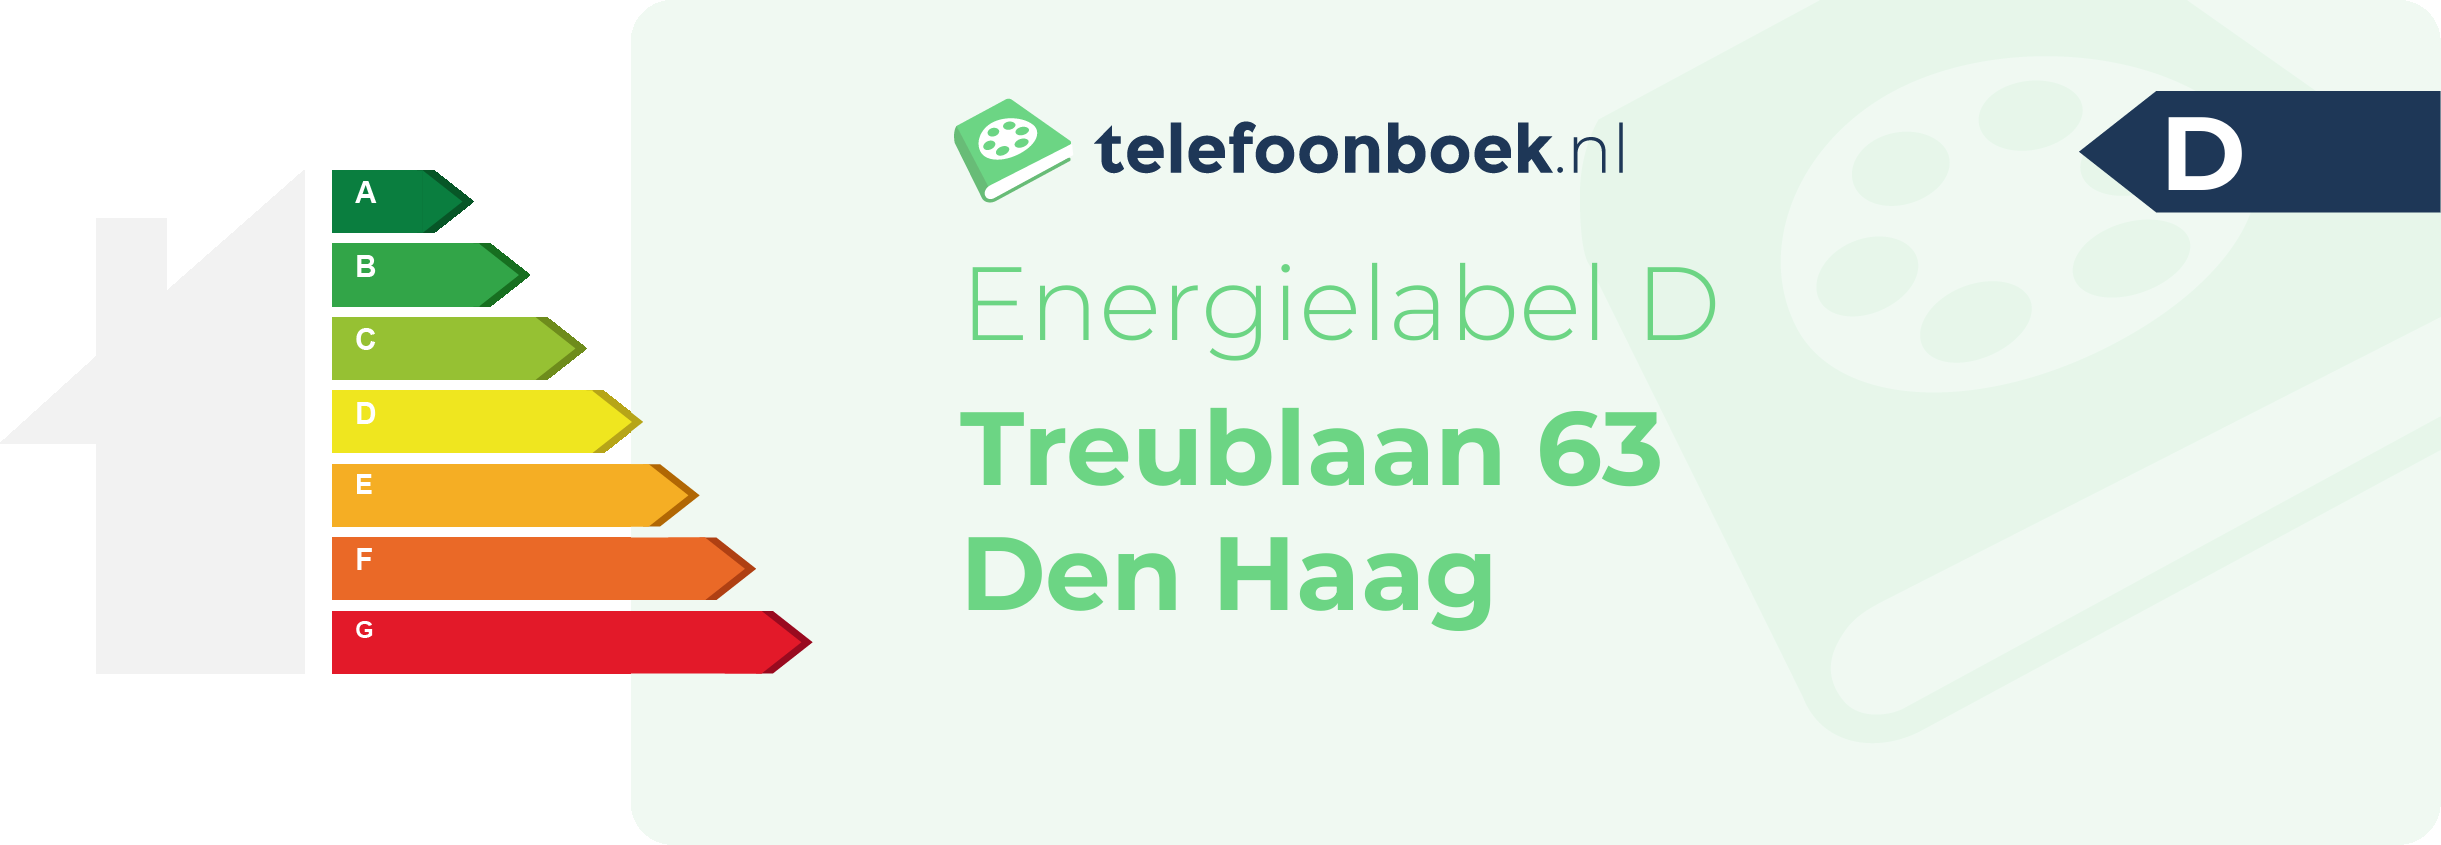 Energielabel Treublaan 63 Den Haag